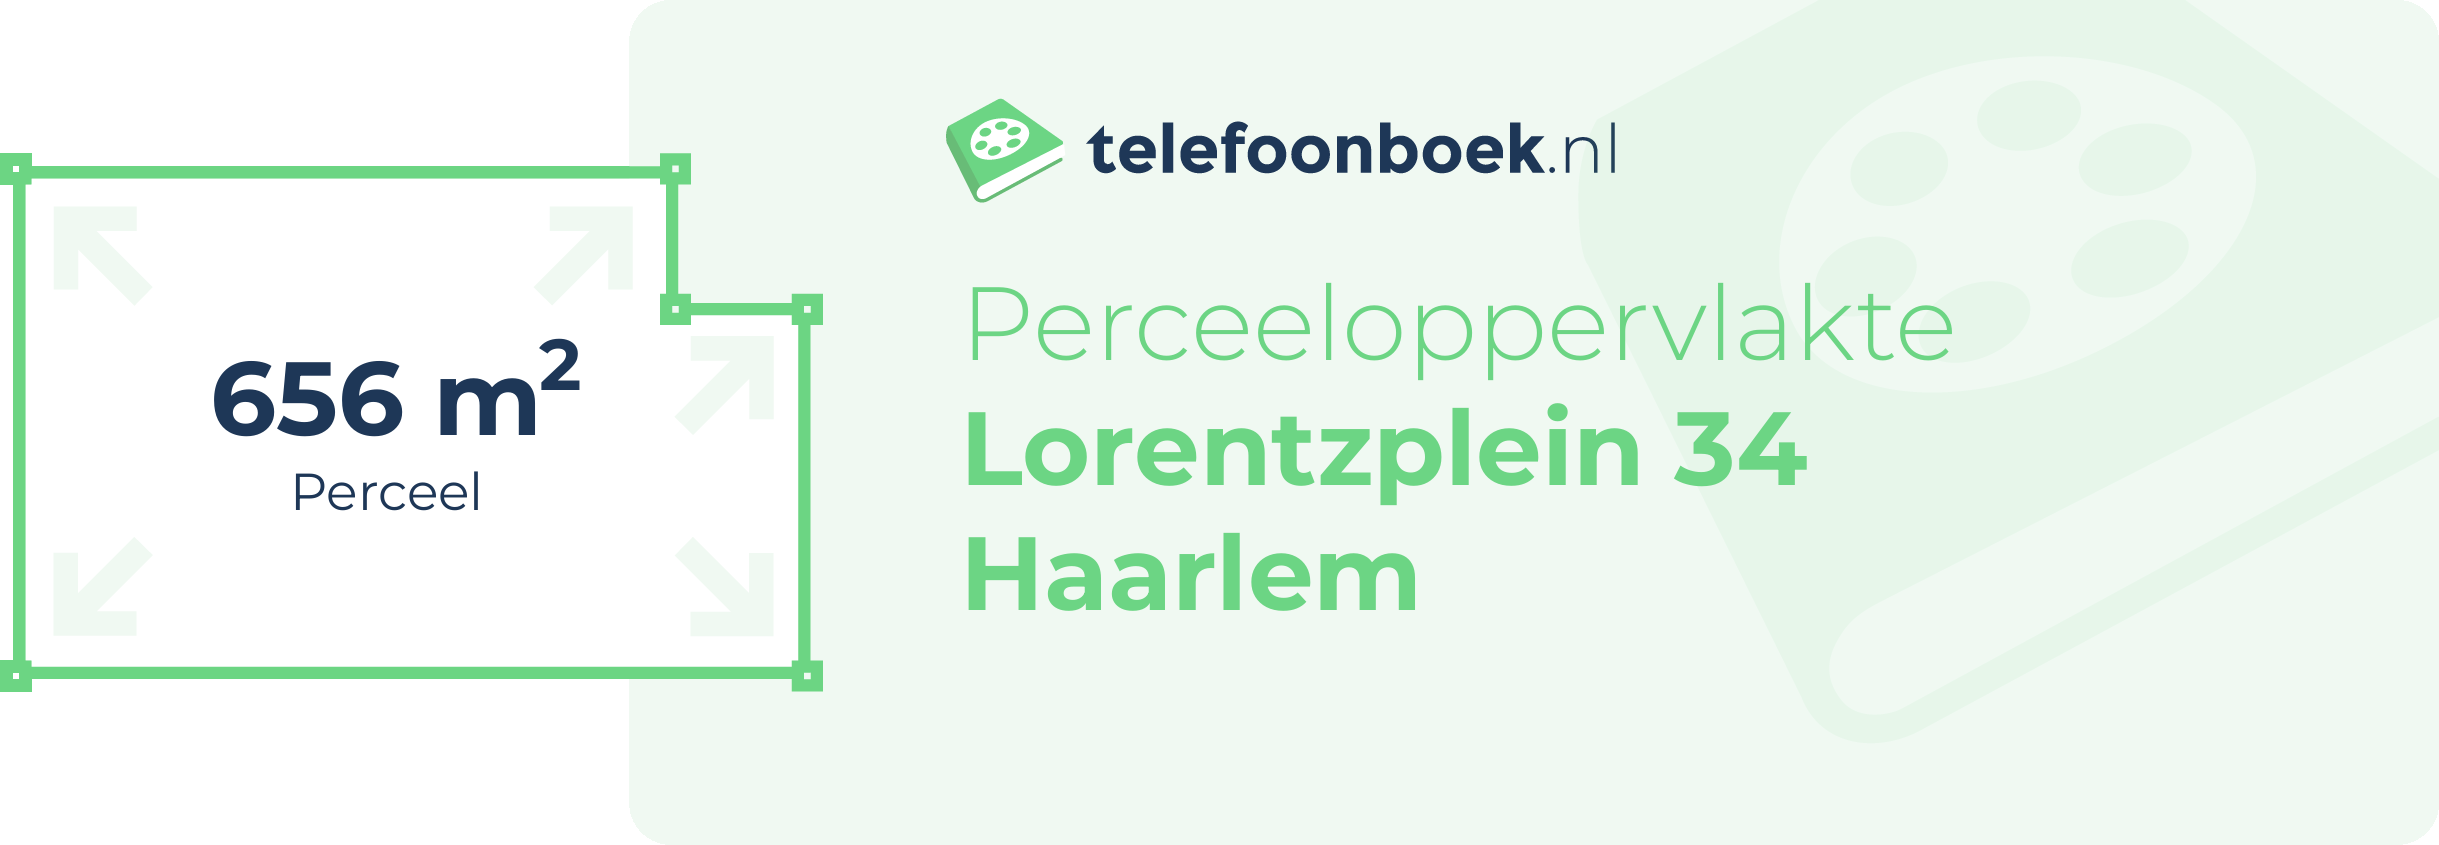 Perceeloppervlakte Lorentzplein 34 Haarlem